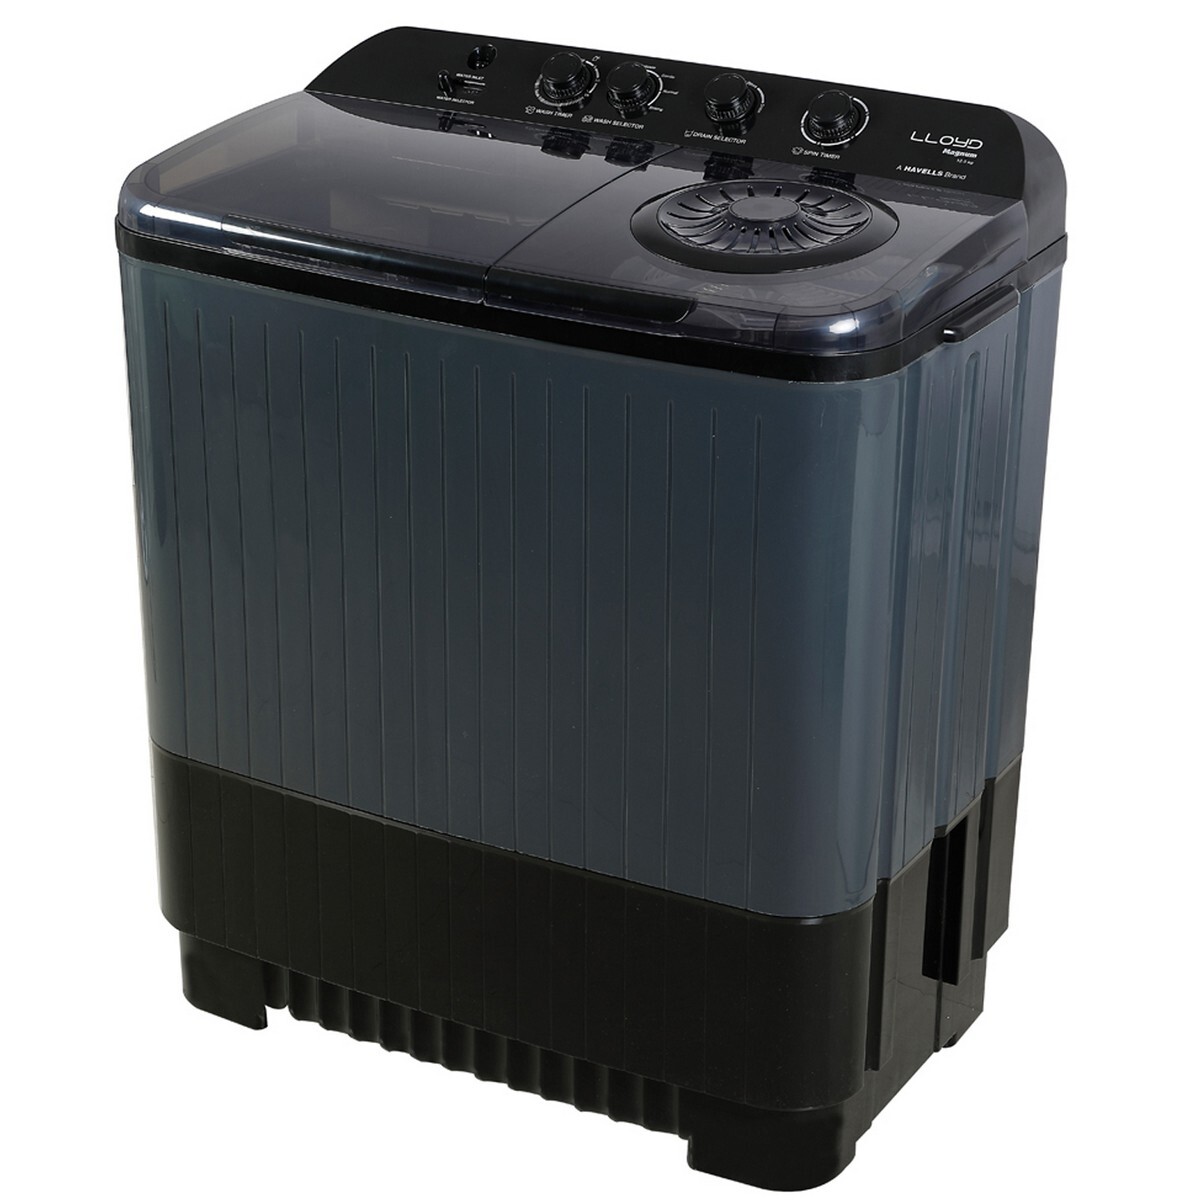 Lloyd Semi Automatic Washing Machine GLWMS11ADGMA 11kg